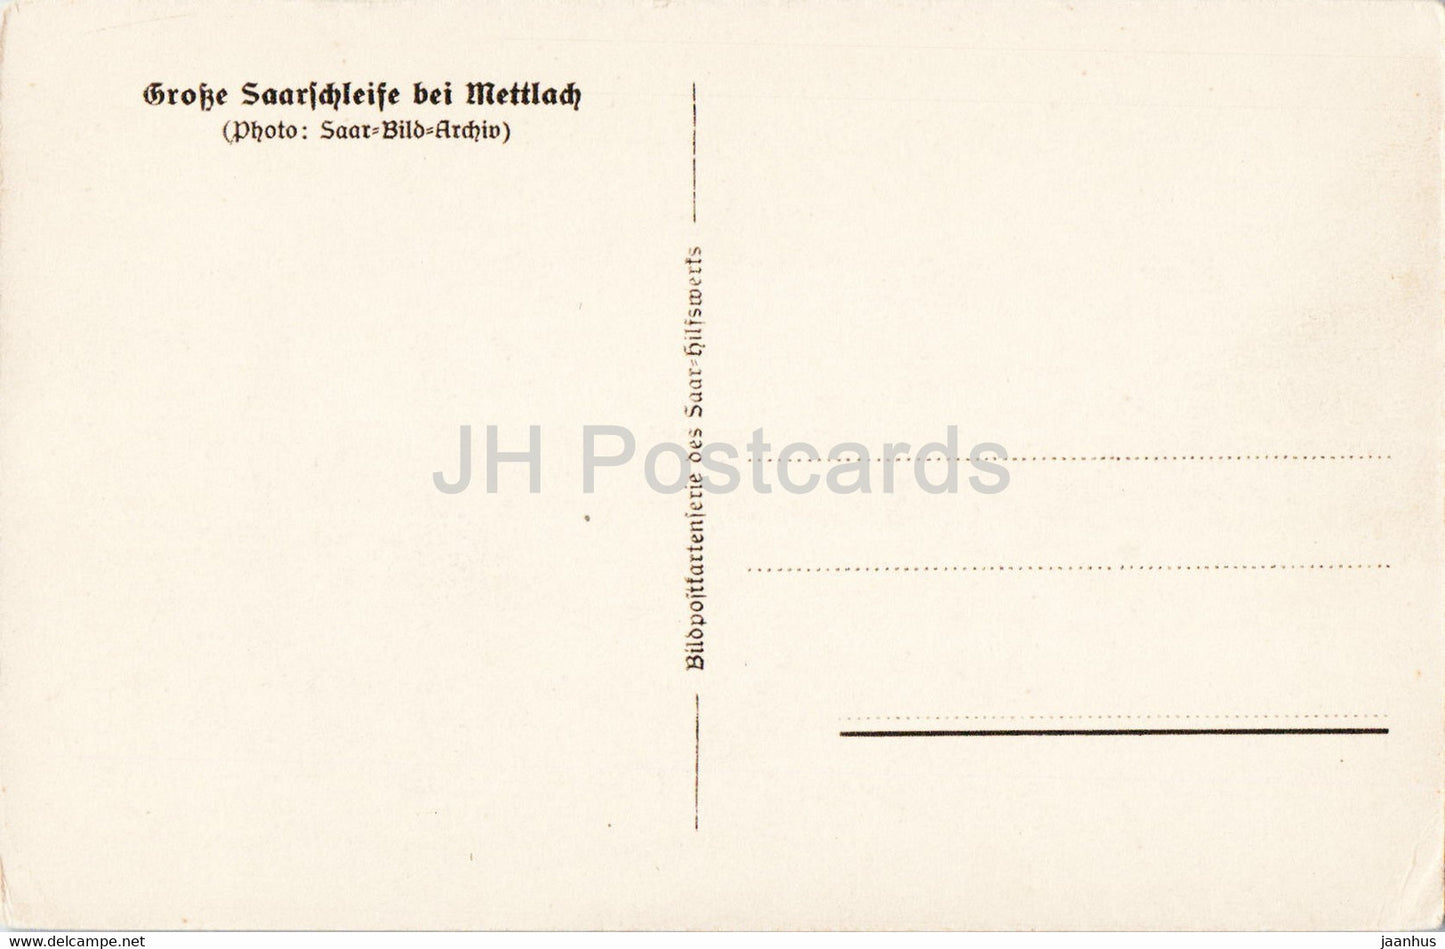 Grosse Saarschleife bei Mettlach - old postcard - Germany - unused